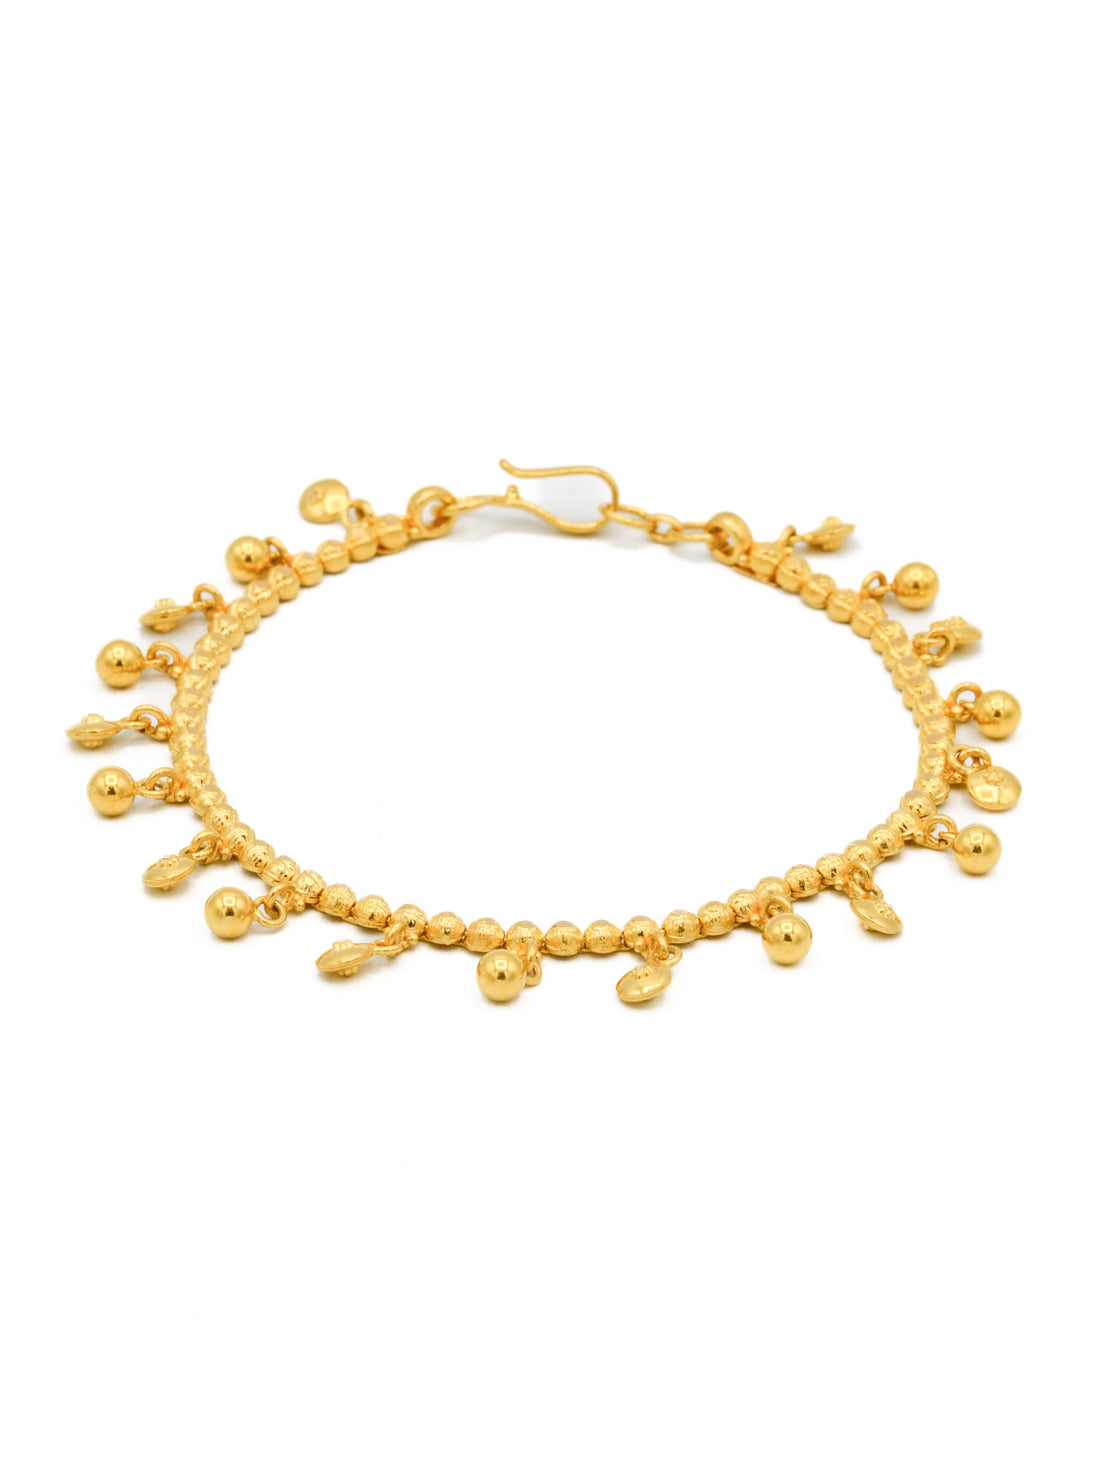 22ct Gold Ball Charms Ladies Bracelet - Roop Darshan